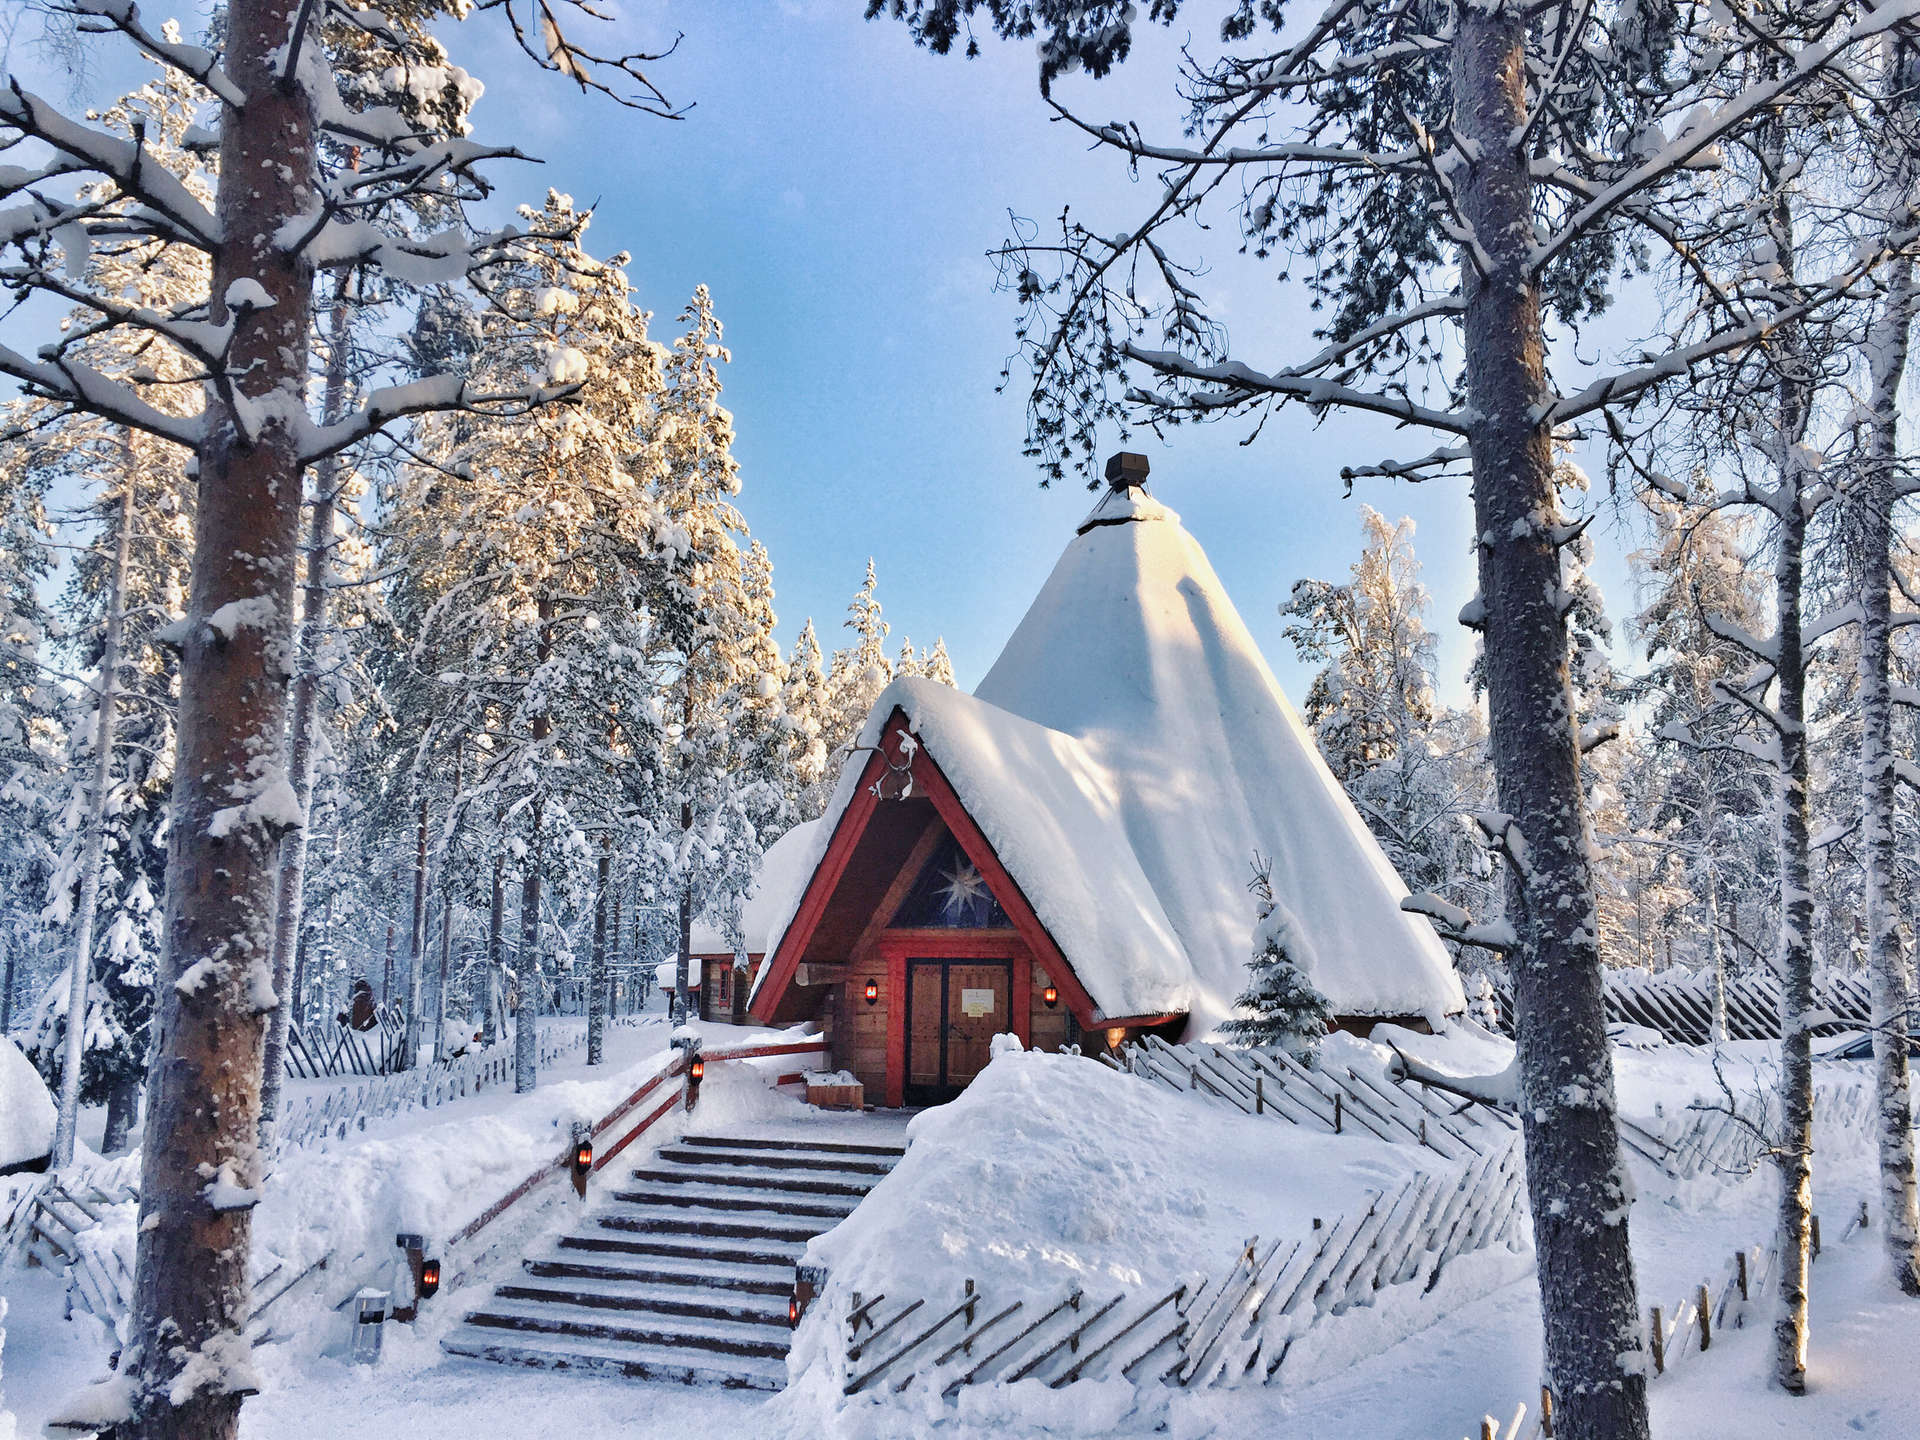 Die Stadt Rovaniemi liegt am Polarkreis im finnischen Lappland und soll die offizielle Heimat des Weihnachtsmanns sein